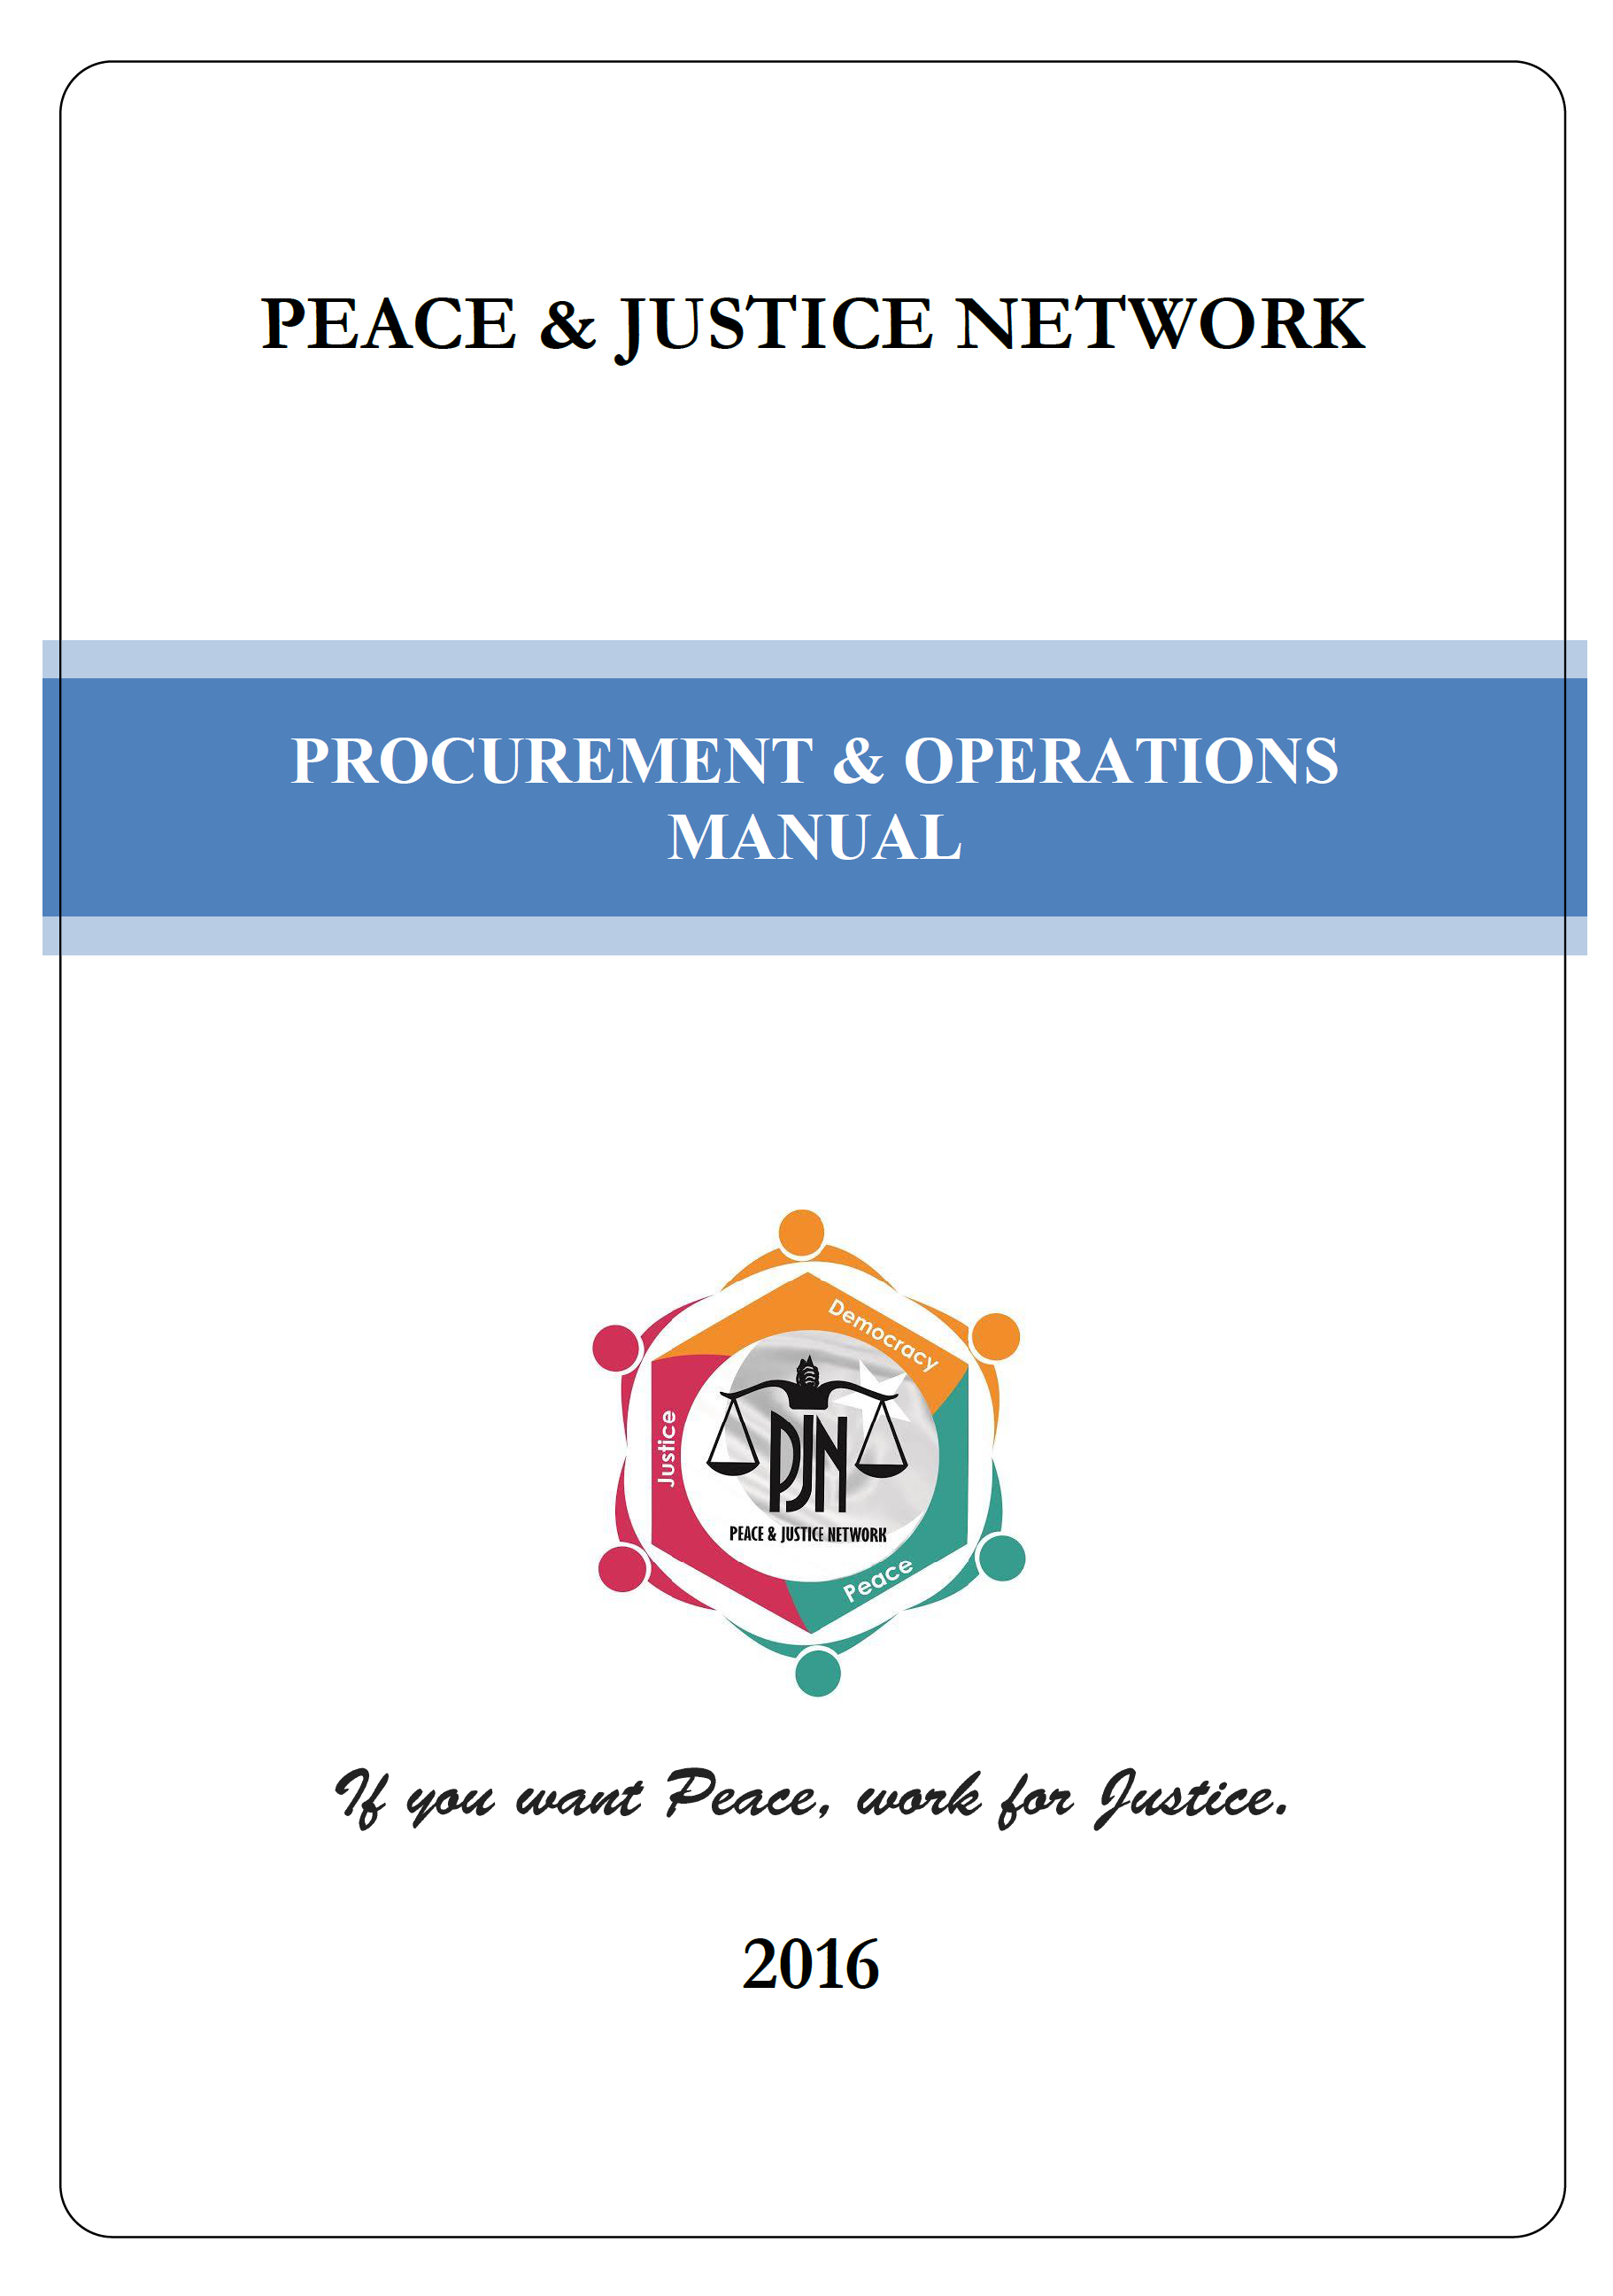 PJN Procurement Manual